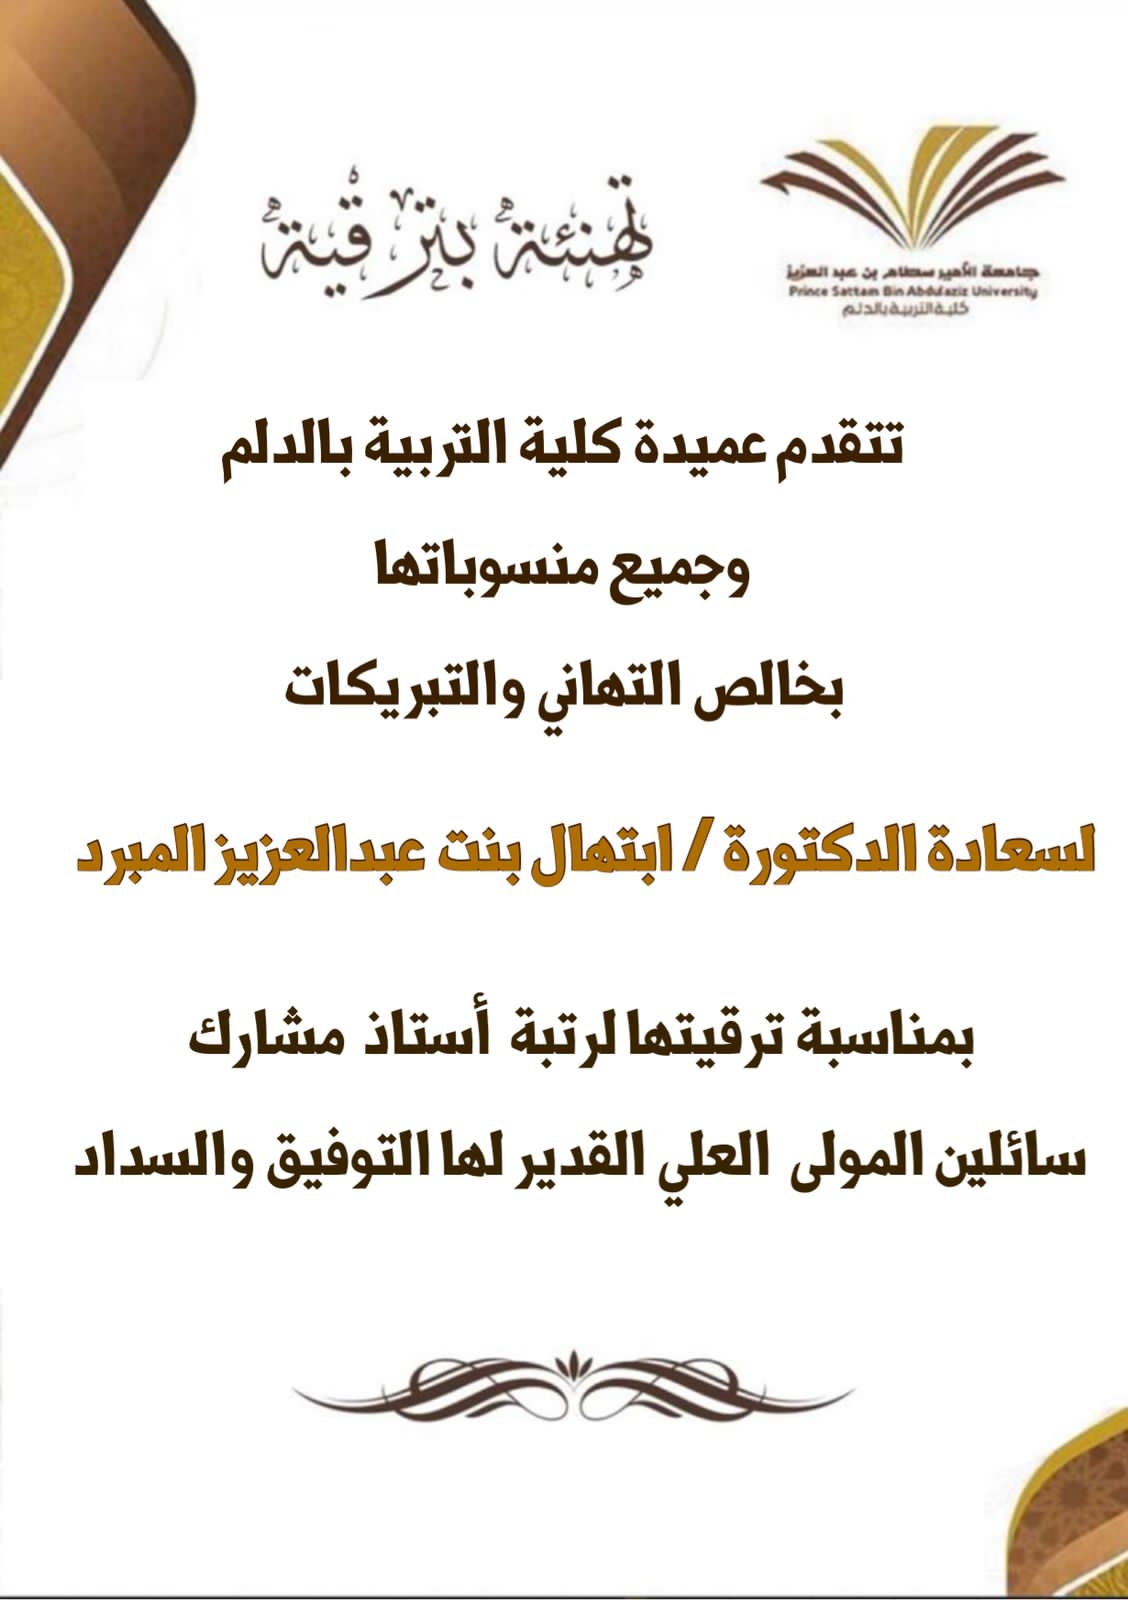 تهنئة لسعادة الدكتورة/ ابتهال بنت عبدالعزيز المبرد